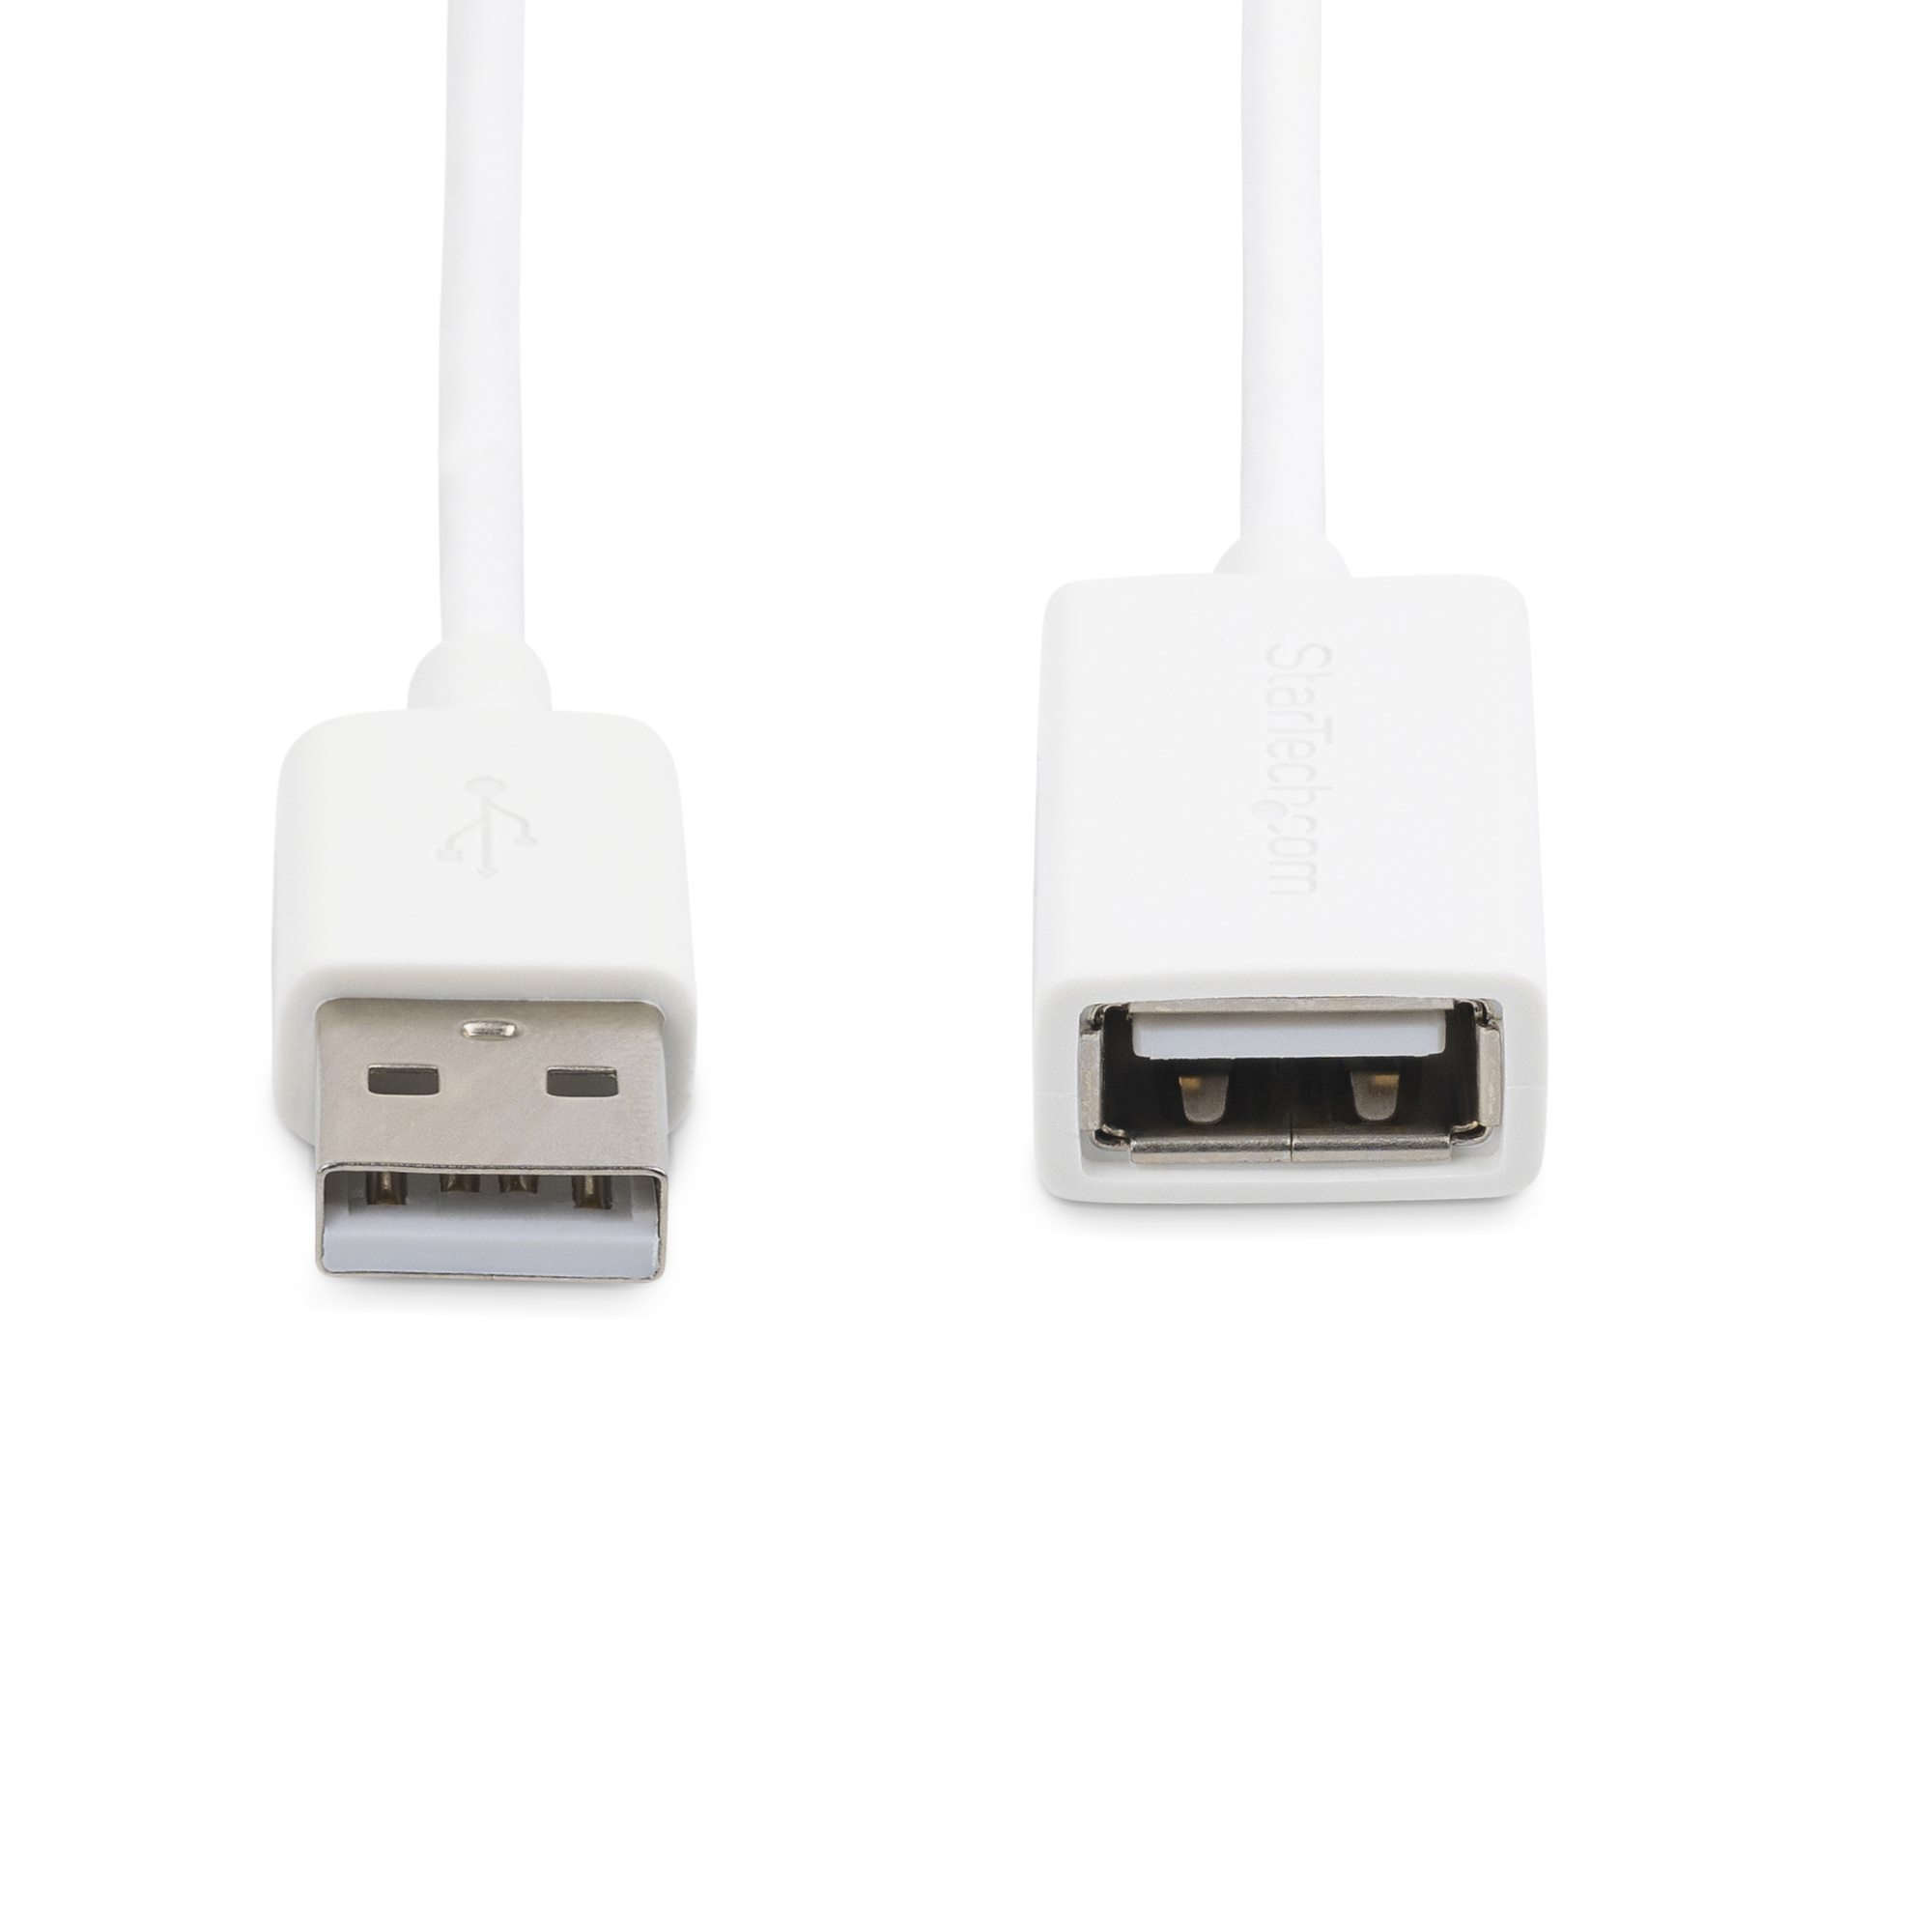 USB 2.0延長ケーブル 3m ホワイト Type-A(オス) - Type-A(メス)